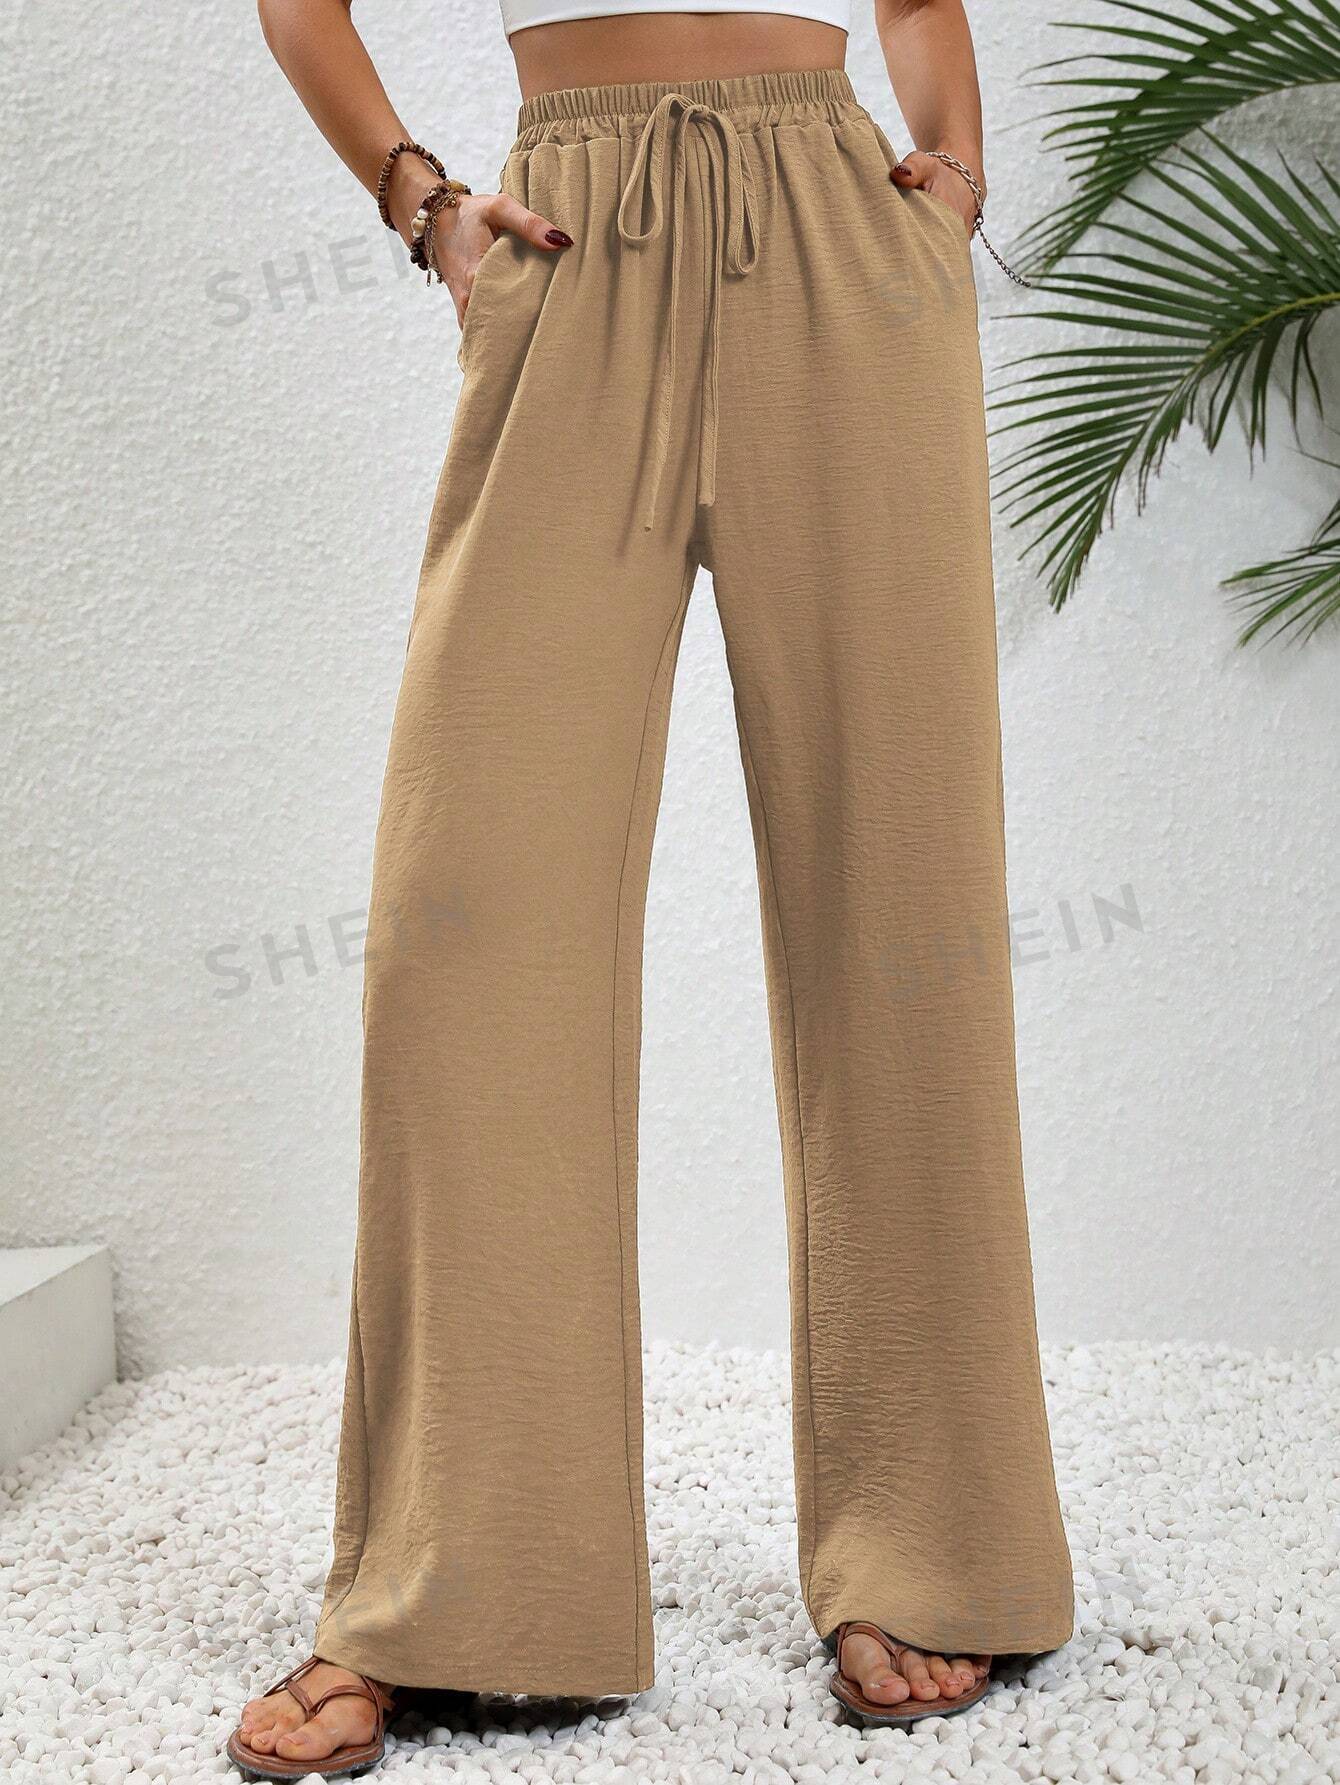 SHEIN LUNE женские однотонные длинные брюки с завышенной талией и завязками на талии и карманами, хаки фото